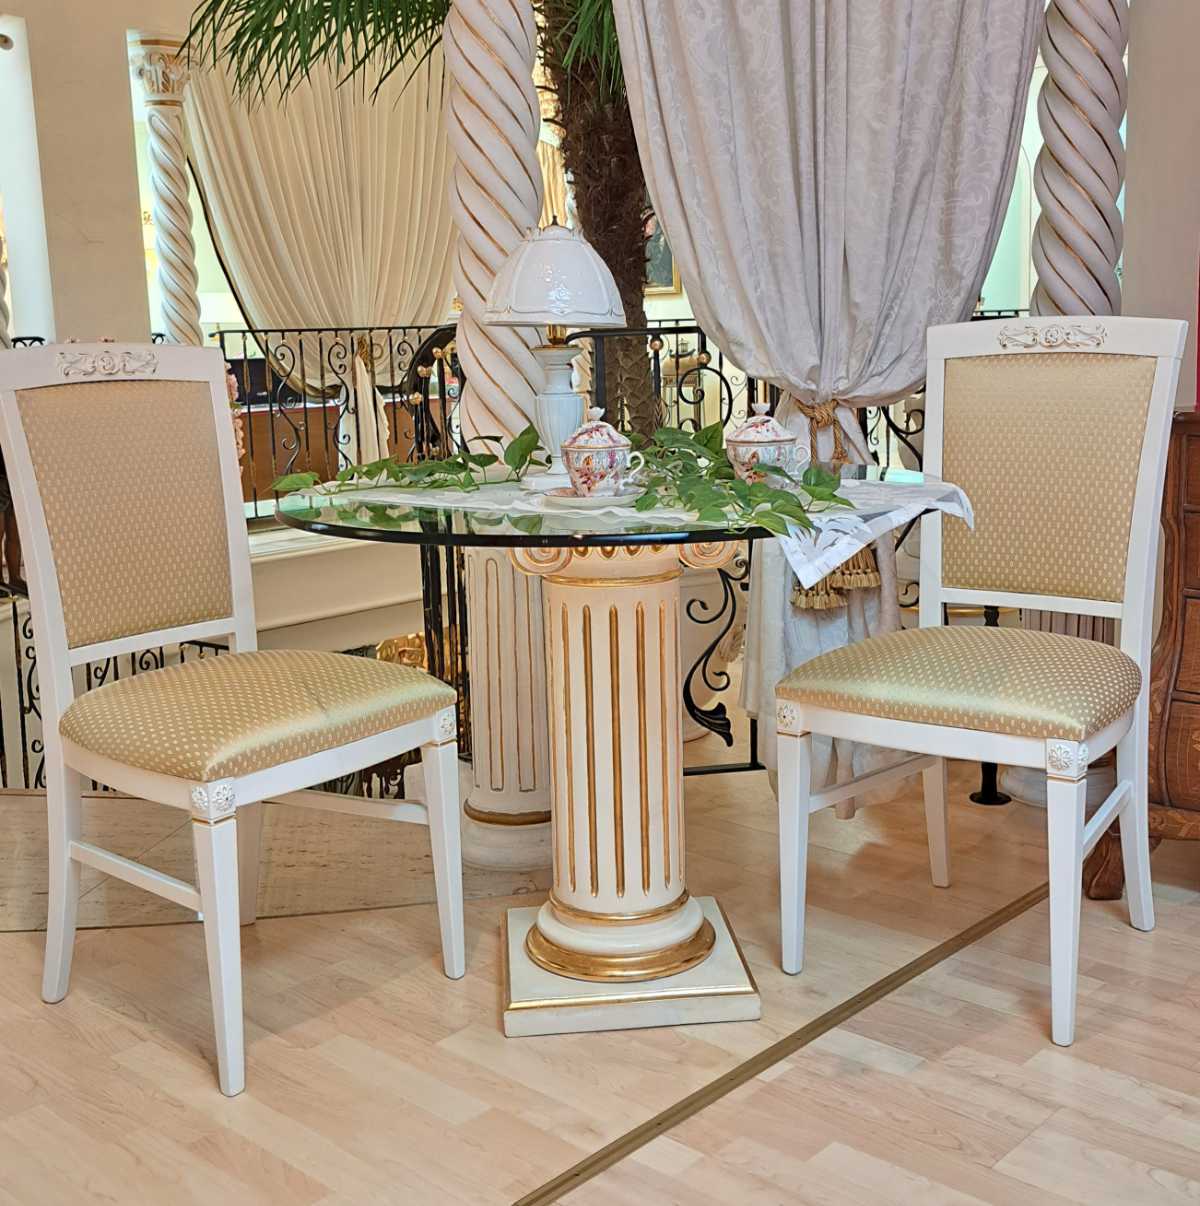 Glastisch mit Säule, dazu vier Stühle, Esstisch aus Italien, runde Platte, weiß und gold patiniert, Secondhand, Frontalansicht des Sets.